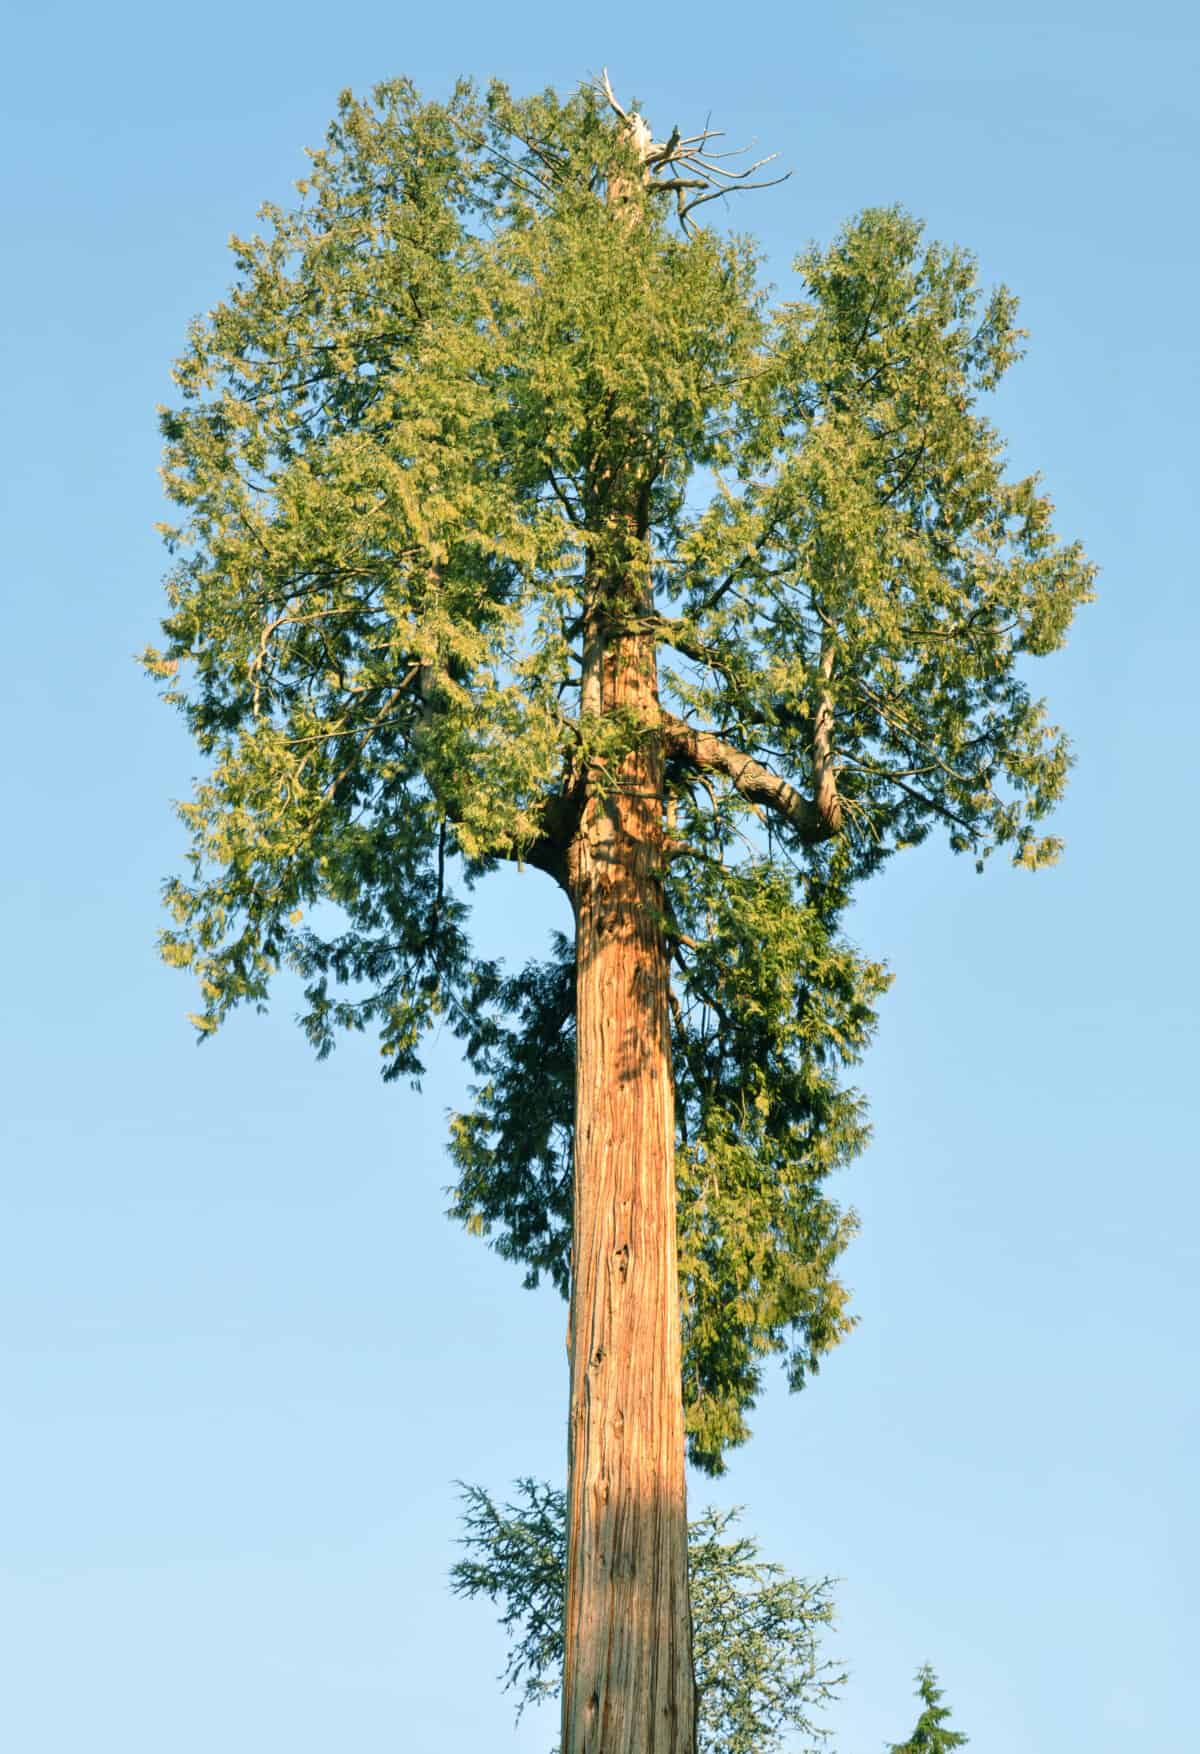 A western red cedar tree